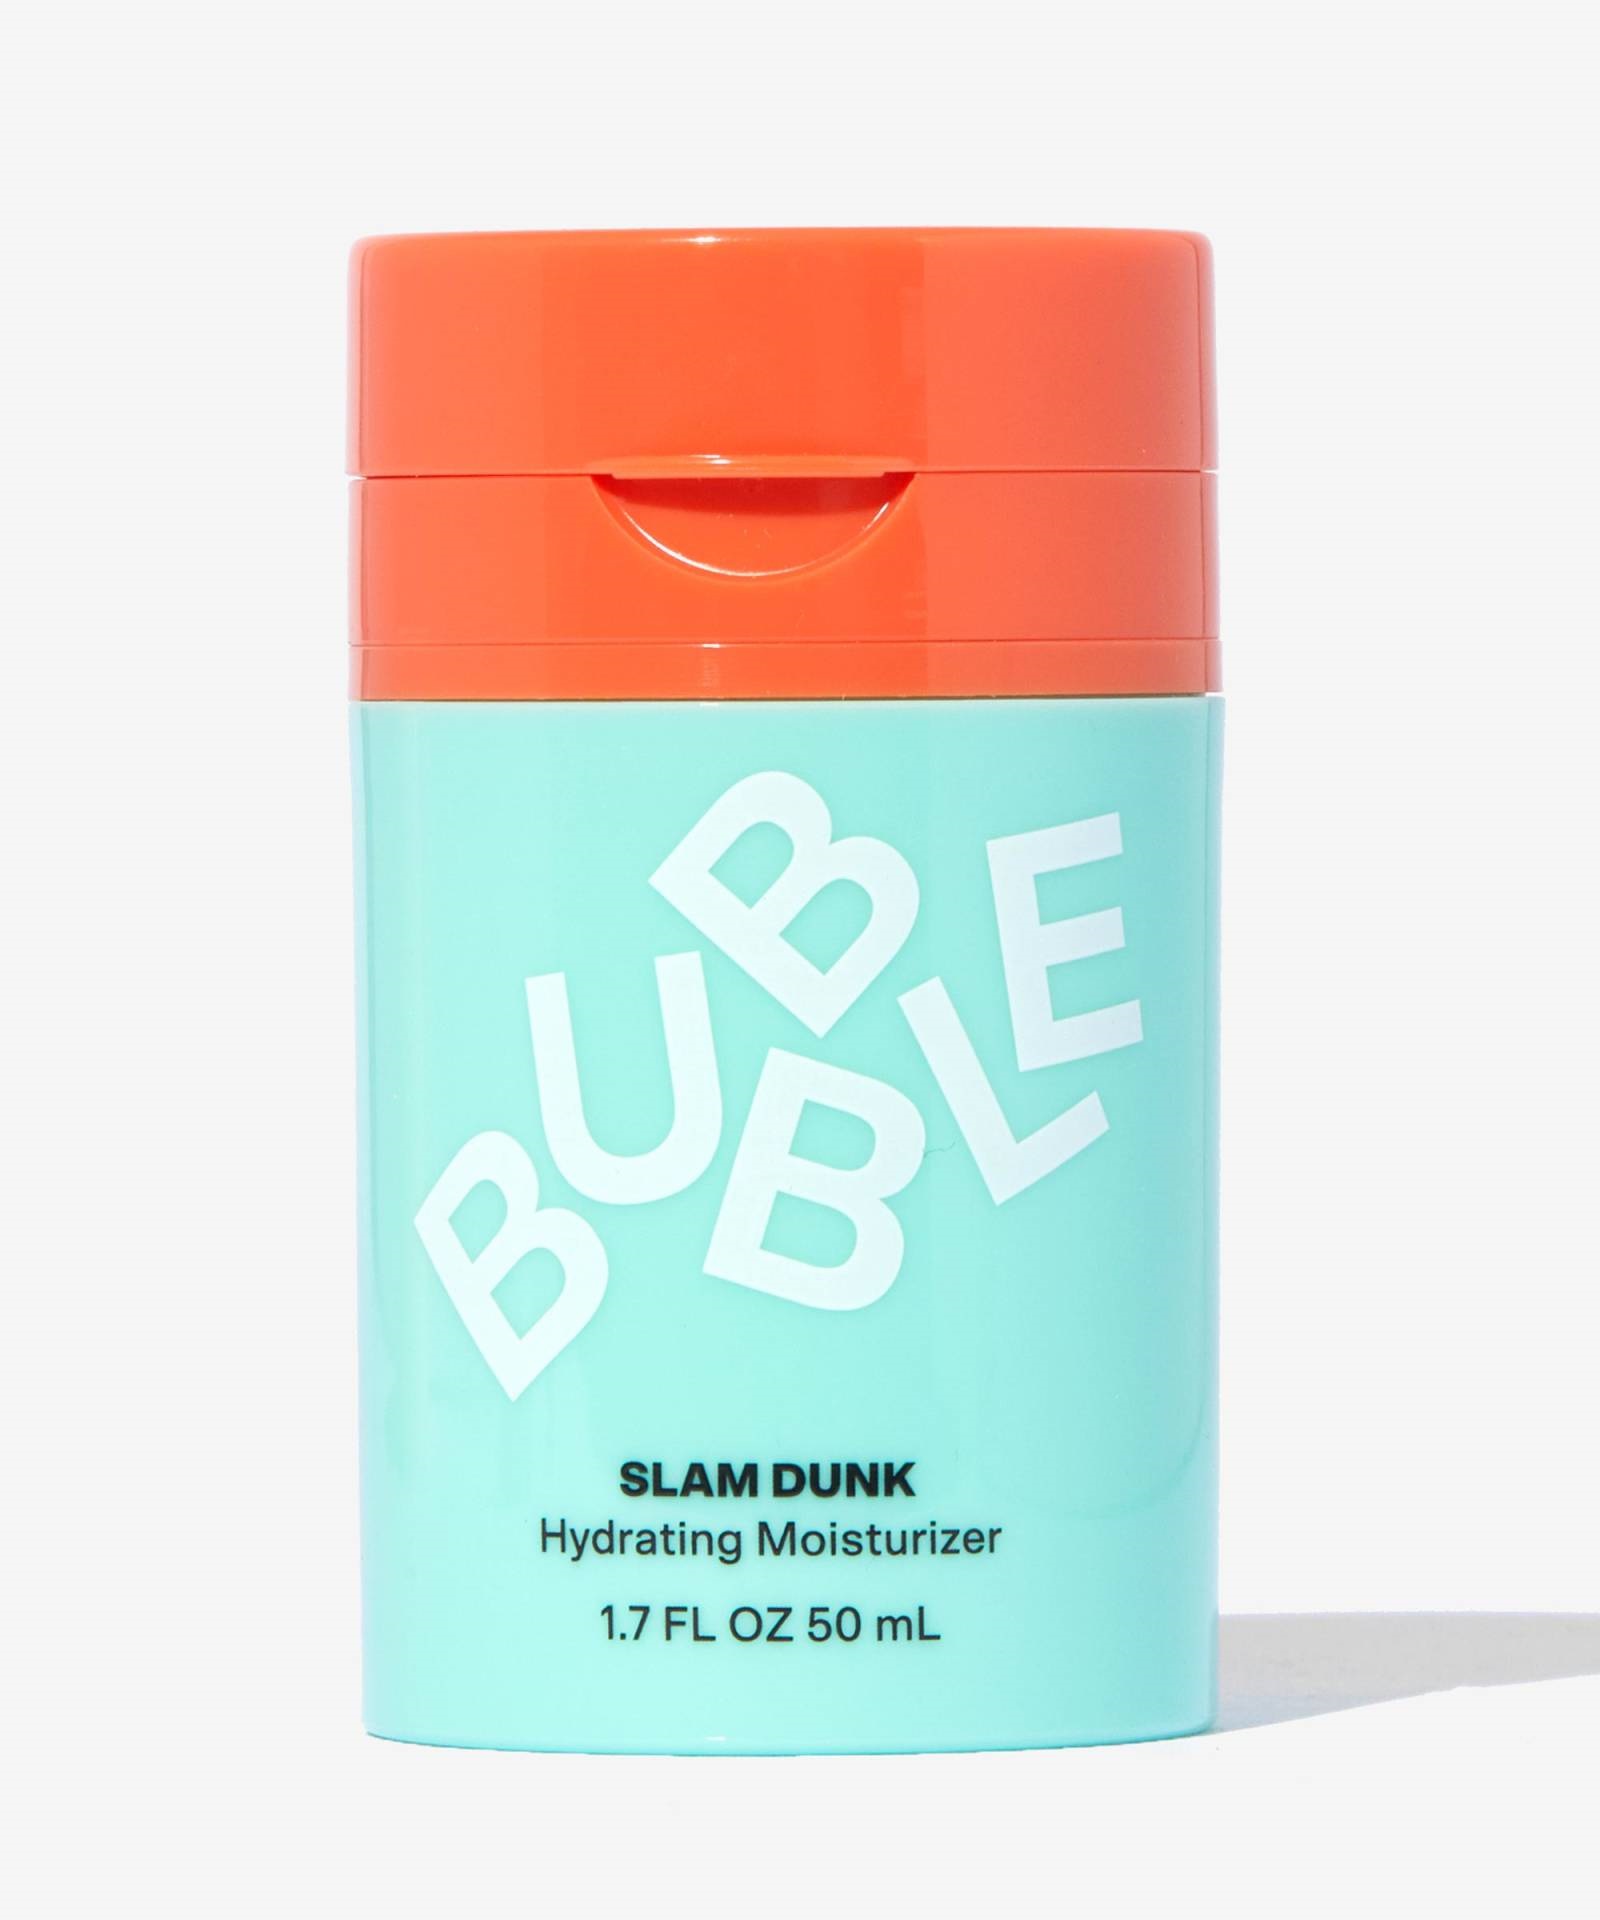 The Bubble Slam Dunk Moisturizer is popular among Gen Z